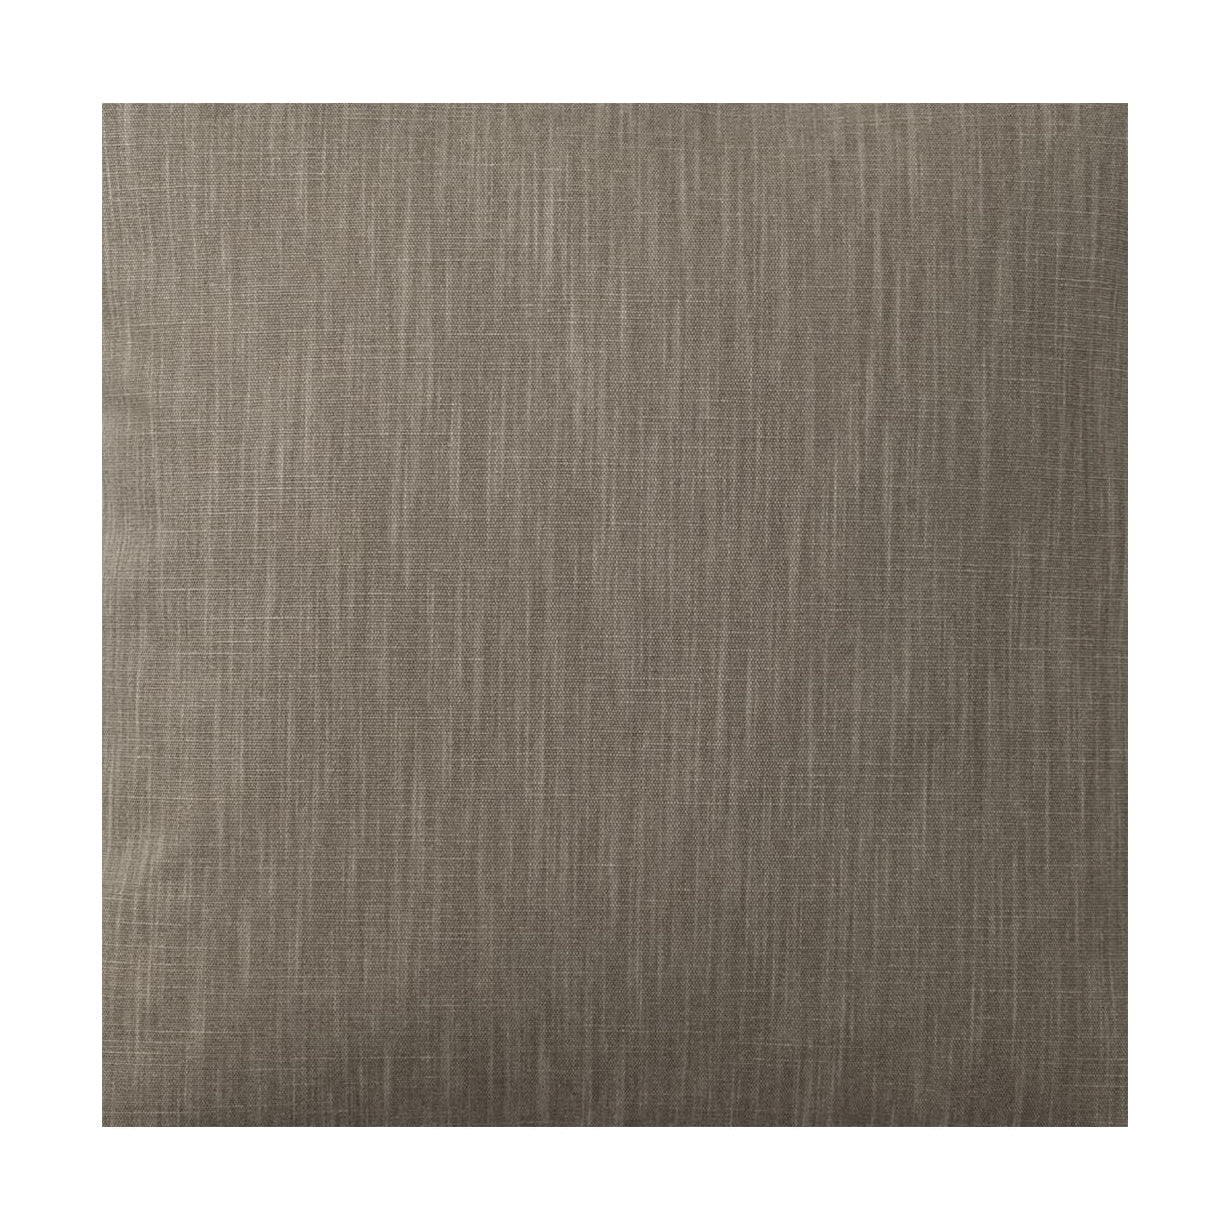 Spira Klotz Szerokość tkaniny 150 cm (cena za metr), brązowy